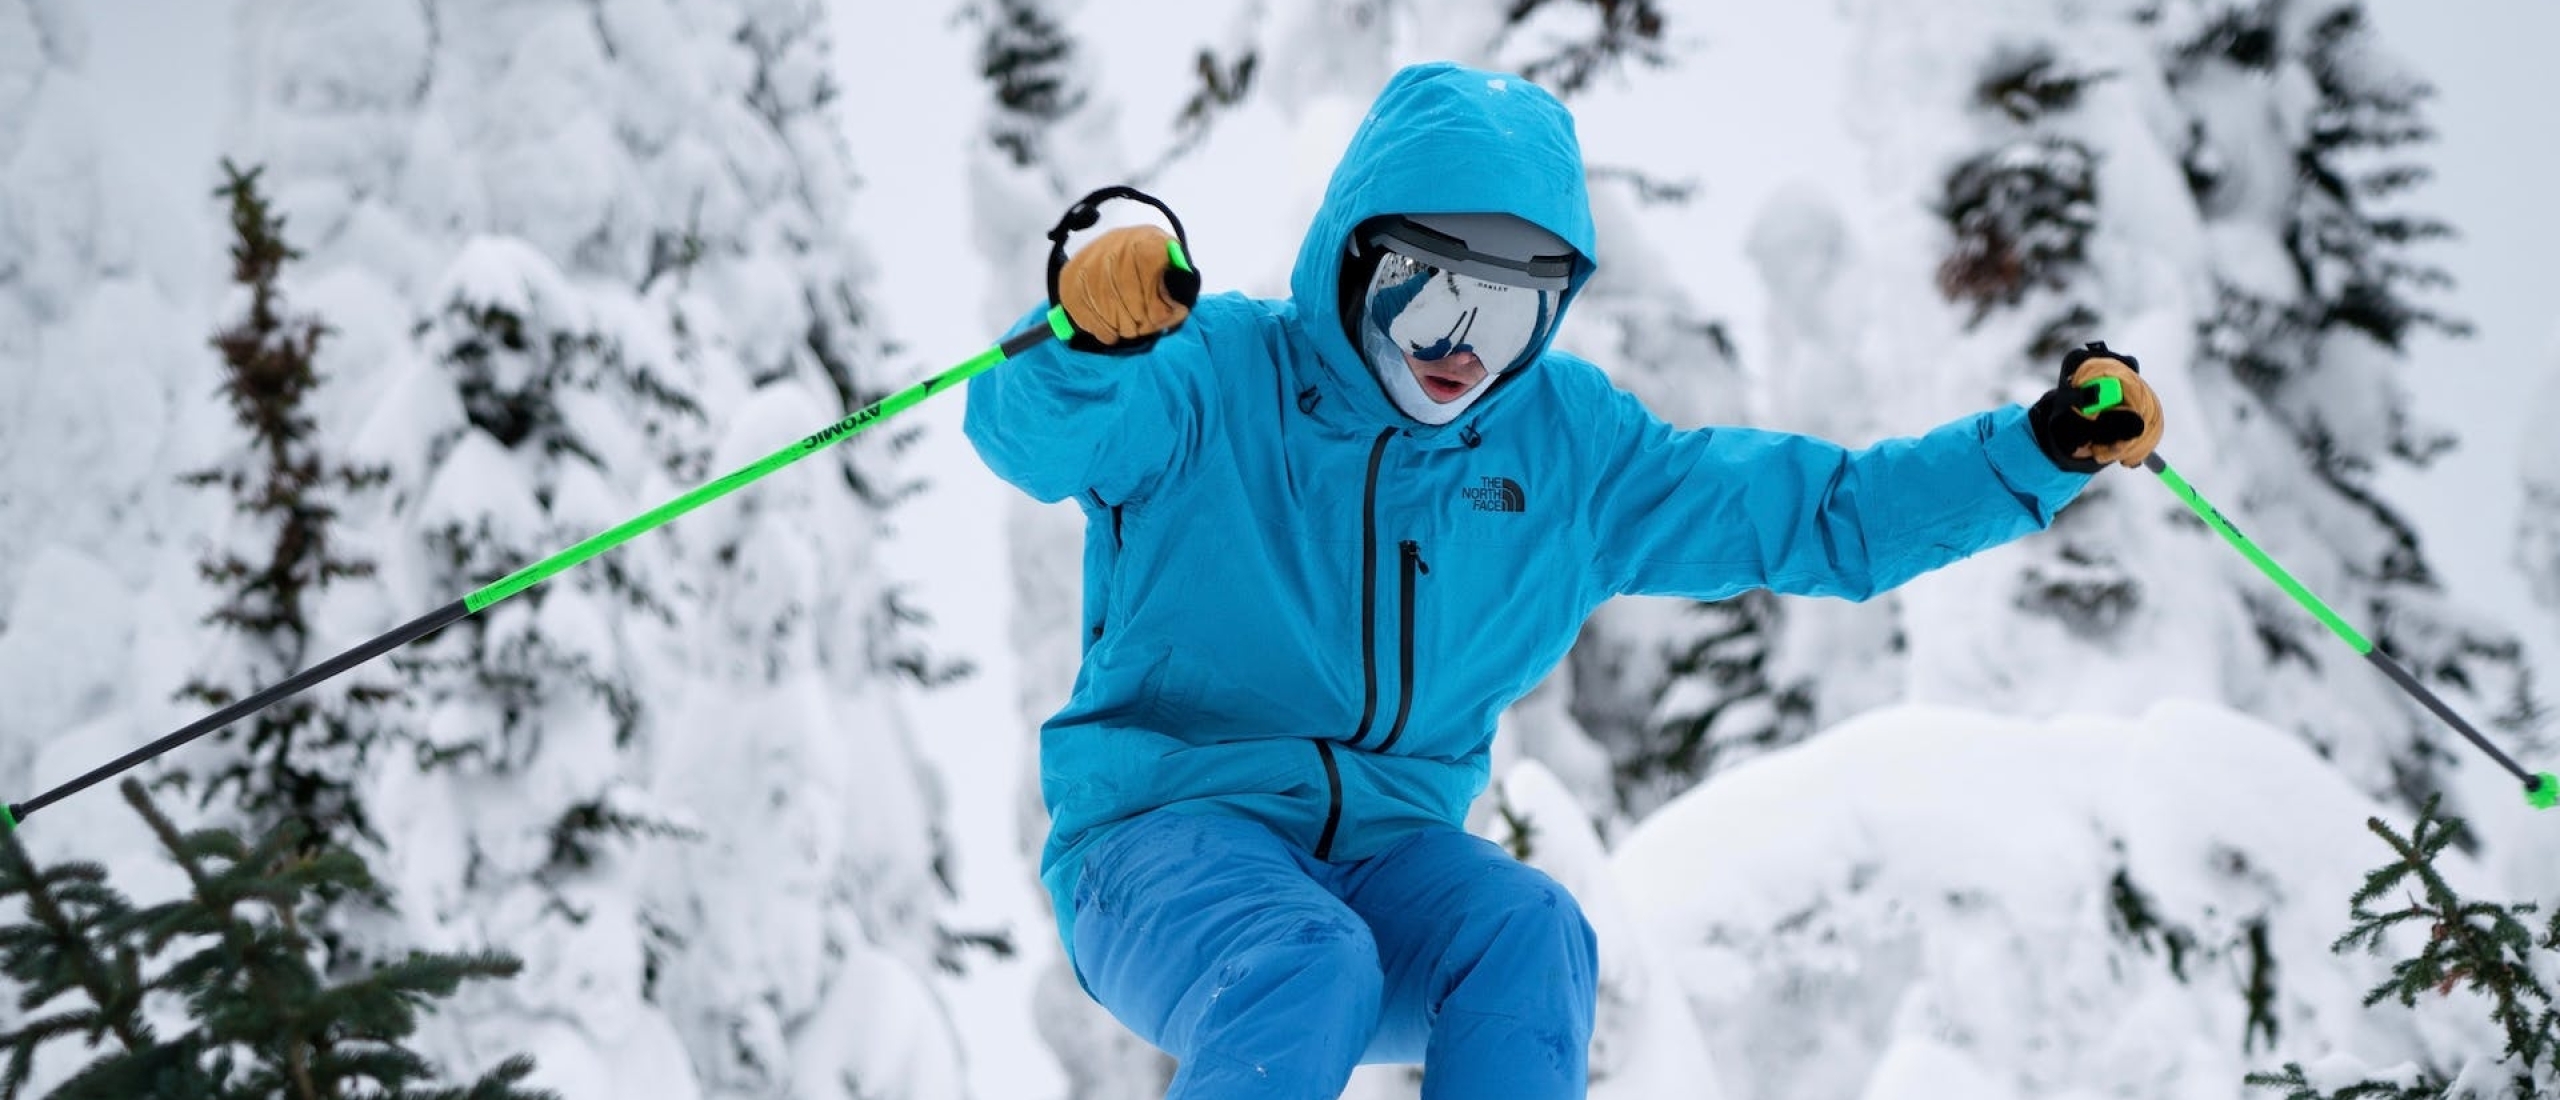 Overschattende wintersporters: het risico op ongelukken verkleinen door je werkelijke skiniveau te kennen